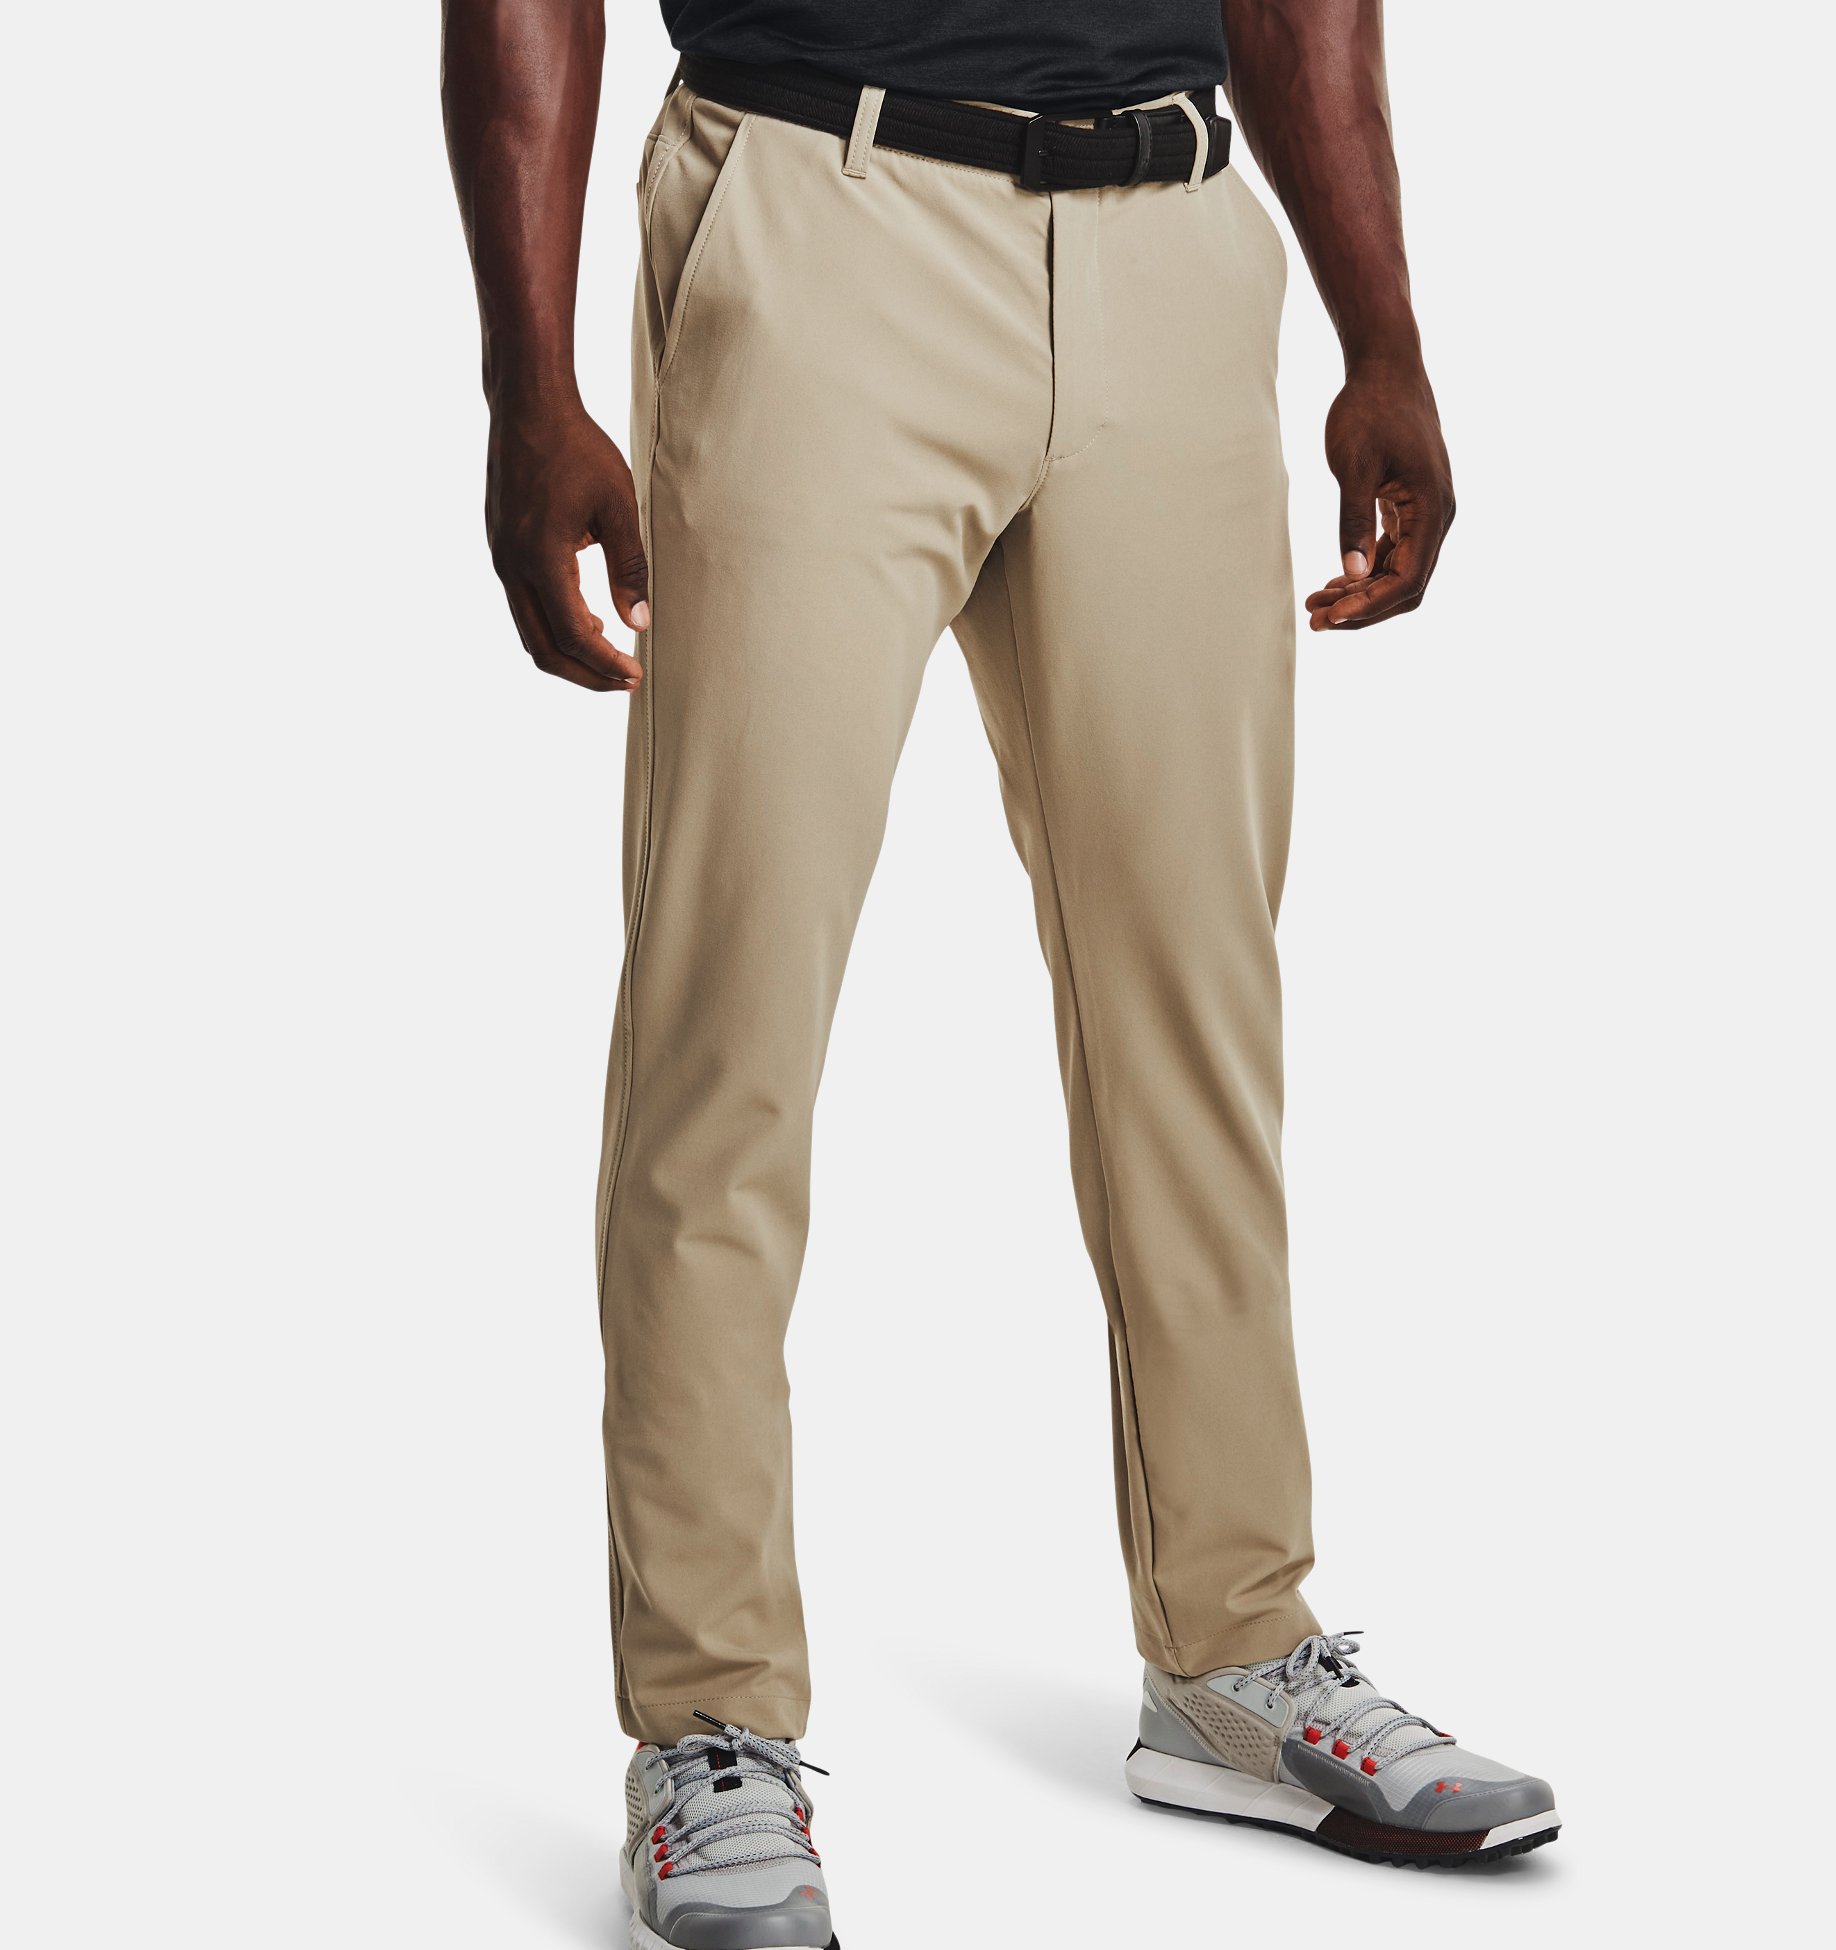 MEN FASHION Trousers Sports H&M slacks Gray L discount 85% 